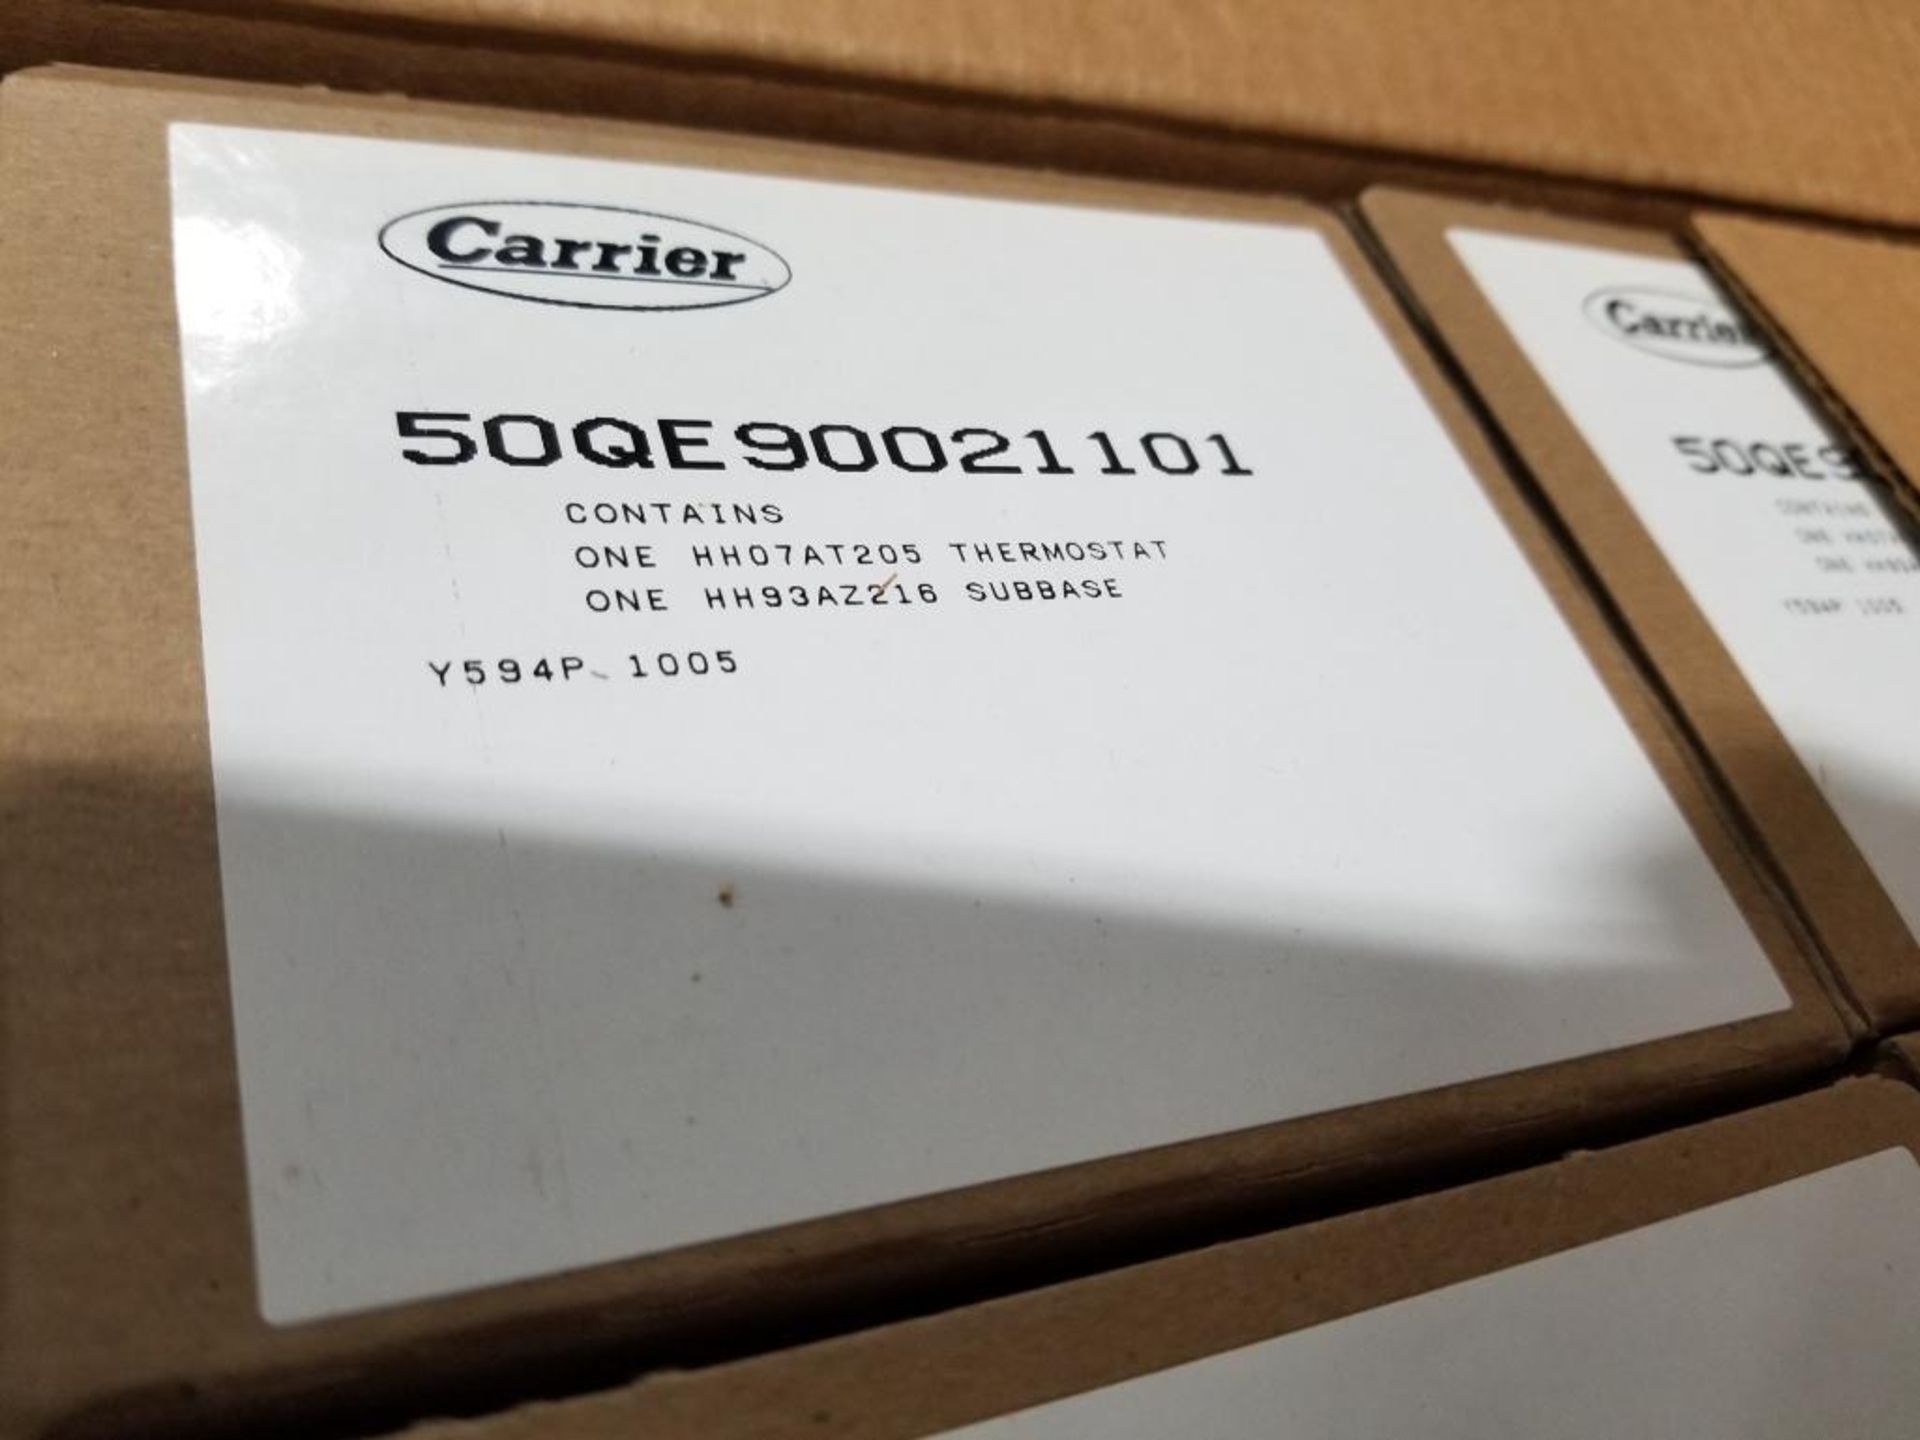 Qty 40 - Carrier thermostat. Part number 50QE90021101. - Bild 5 aus 5